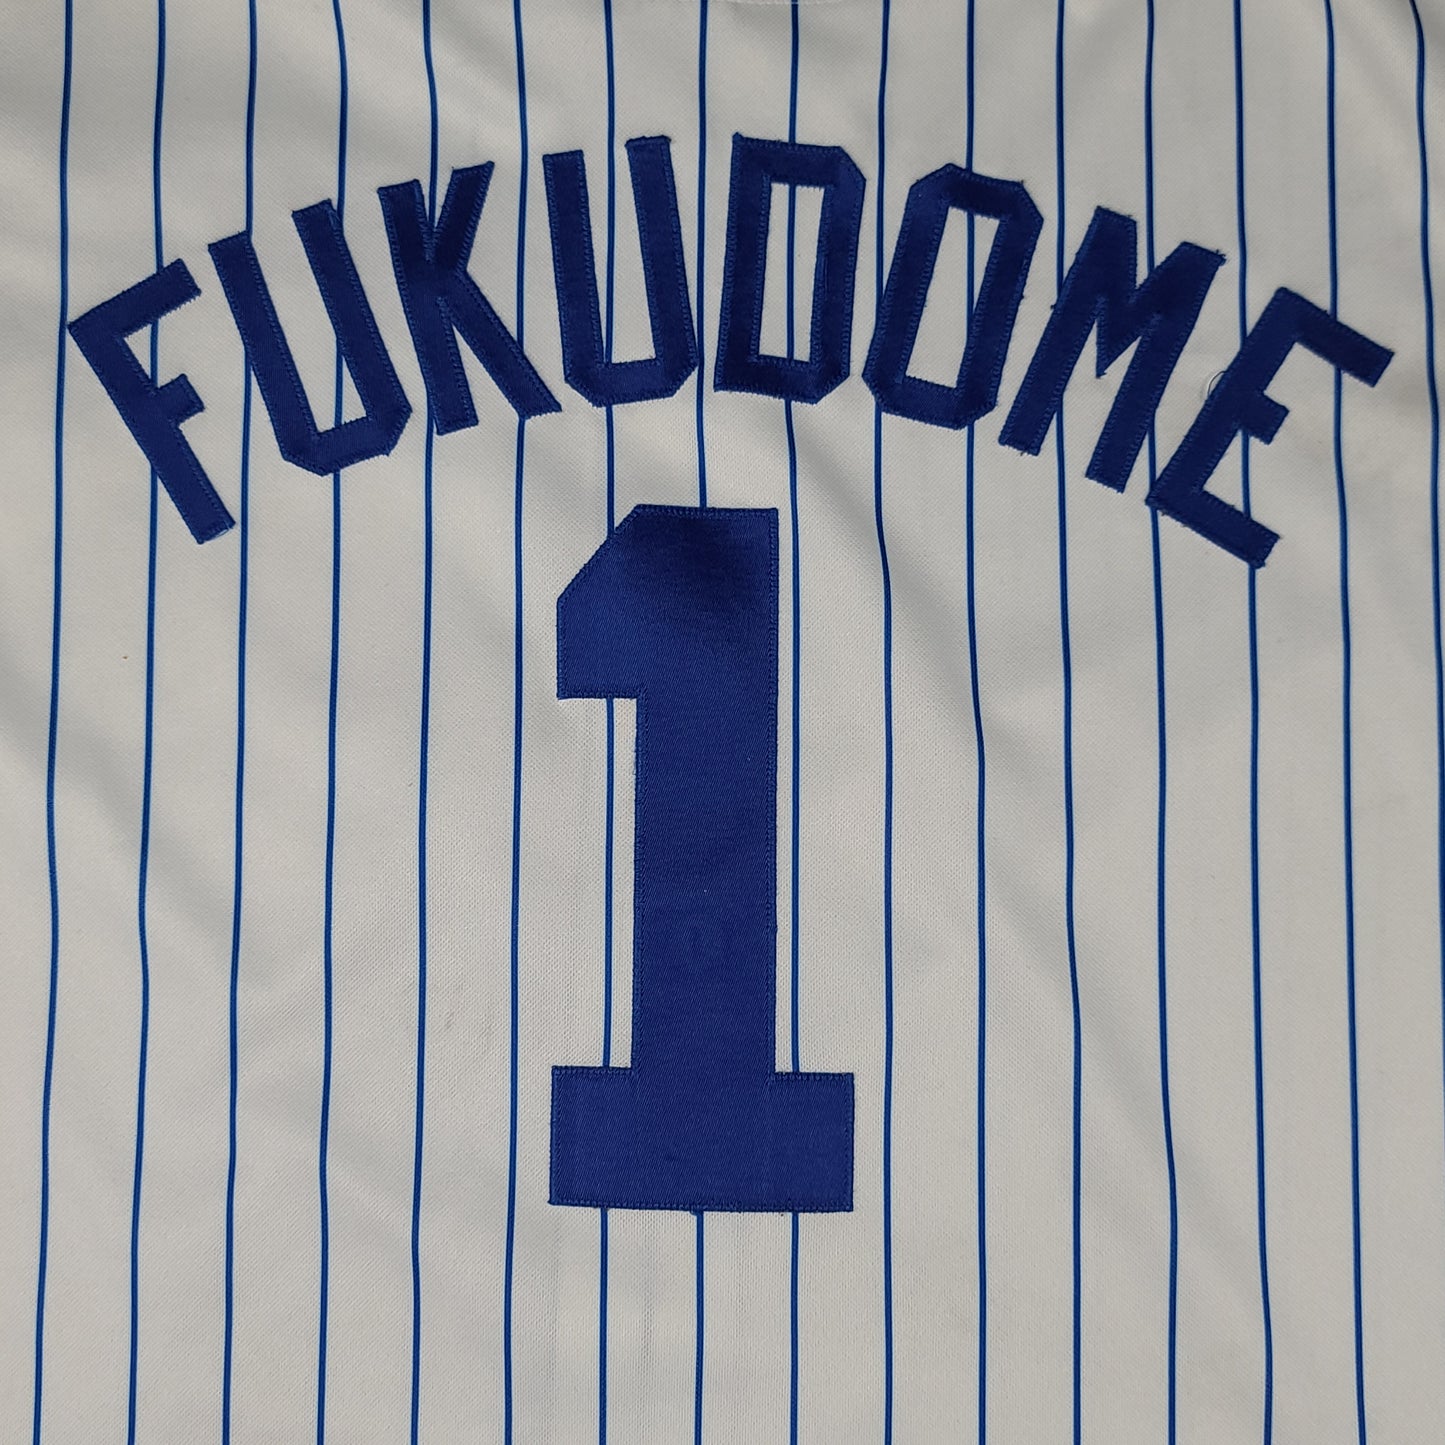 Kosuke Fukudome Chicago Cubs MLB Pinstripe Majestic Baseball Jersey